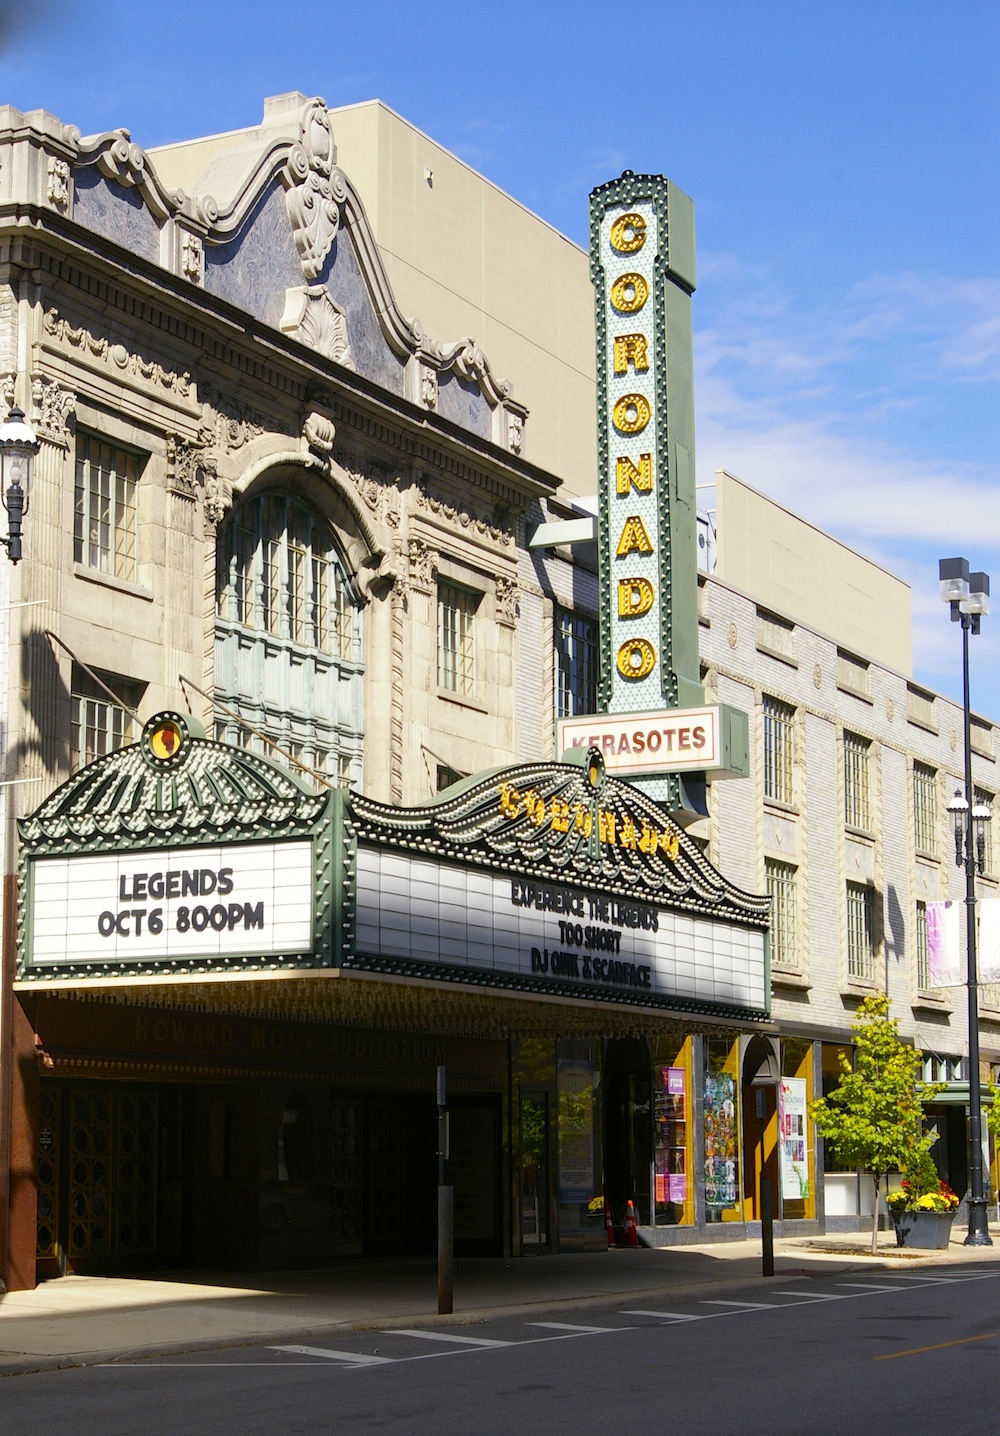 Exterior facade and marquee of the Coronado Performing Arts Center in Rockford, Illinois